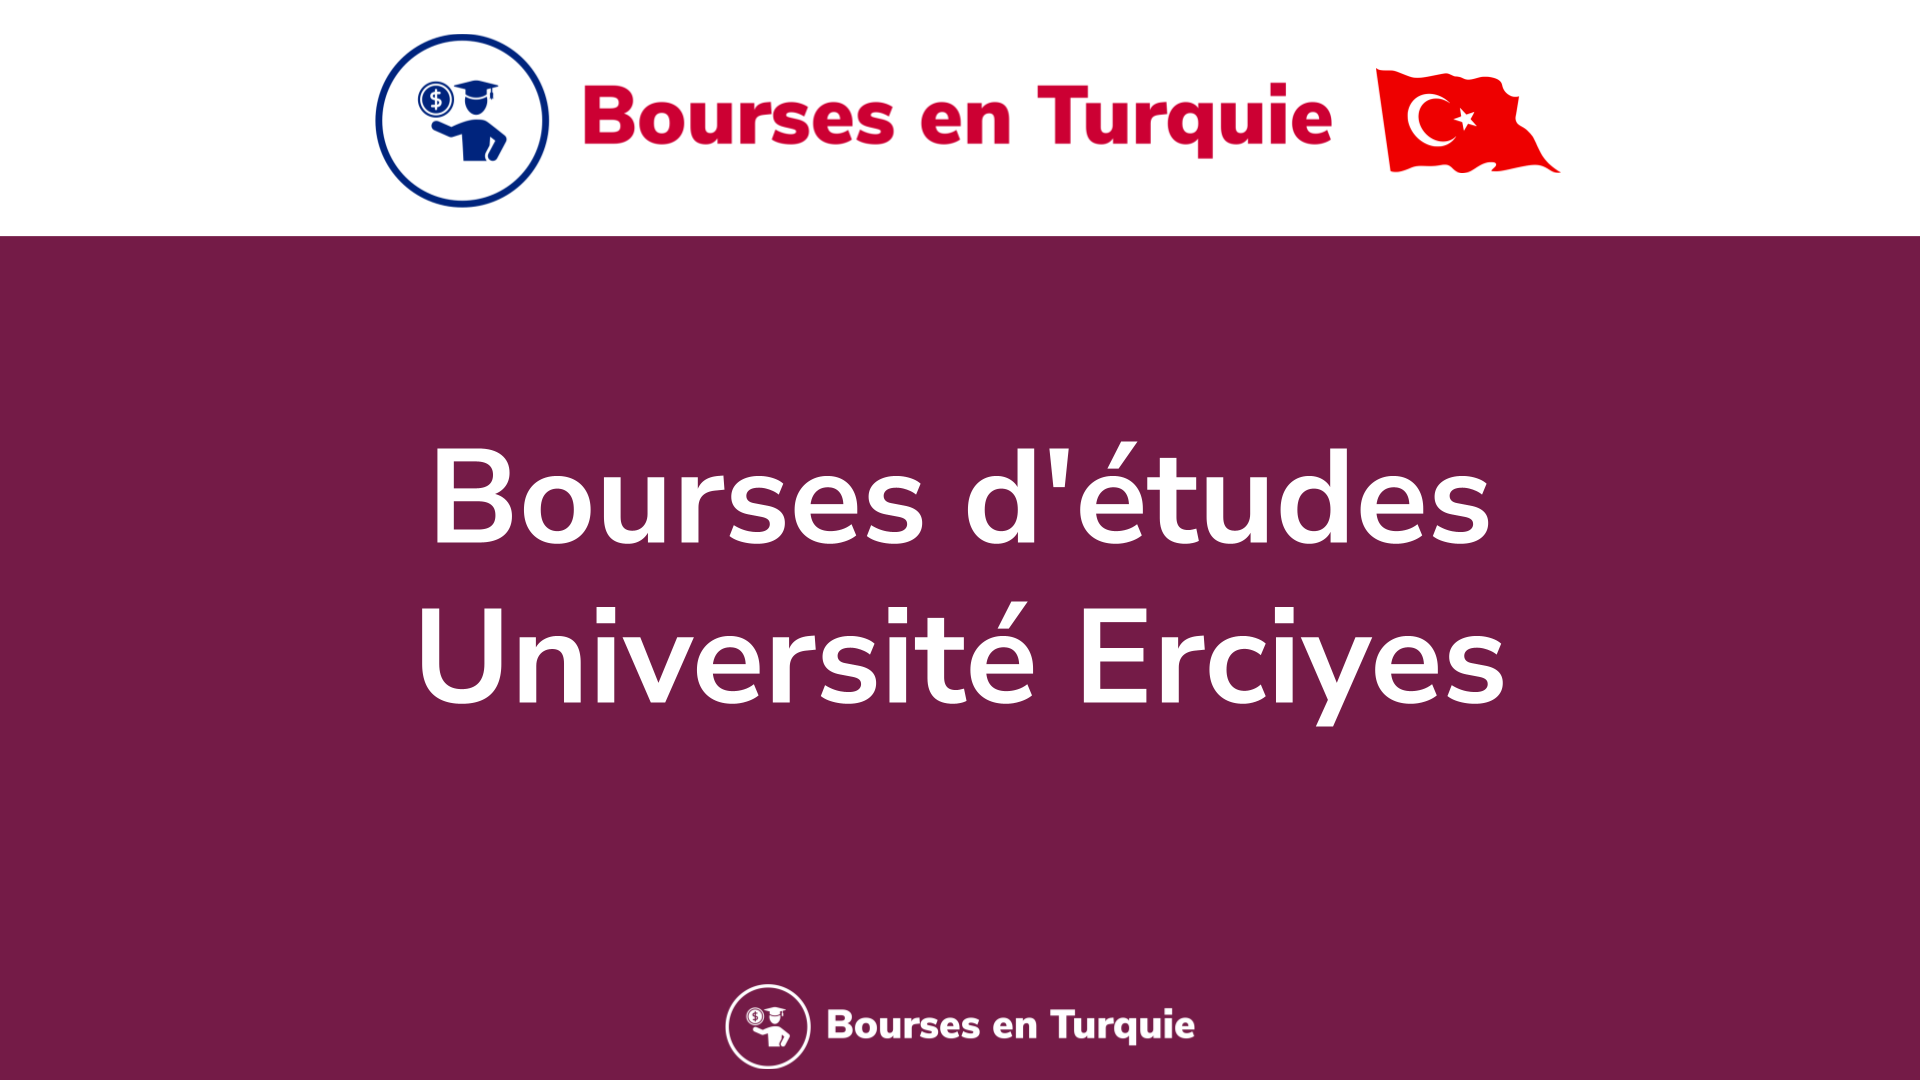 Bourses d'études Université Erciyes